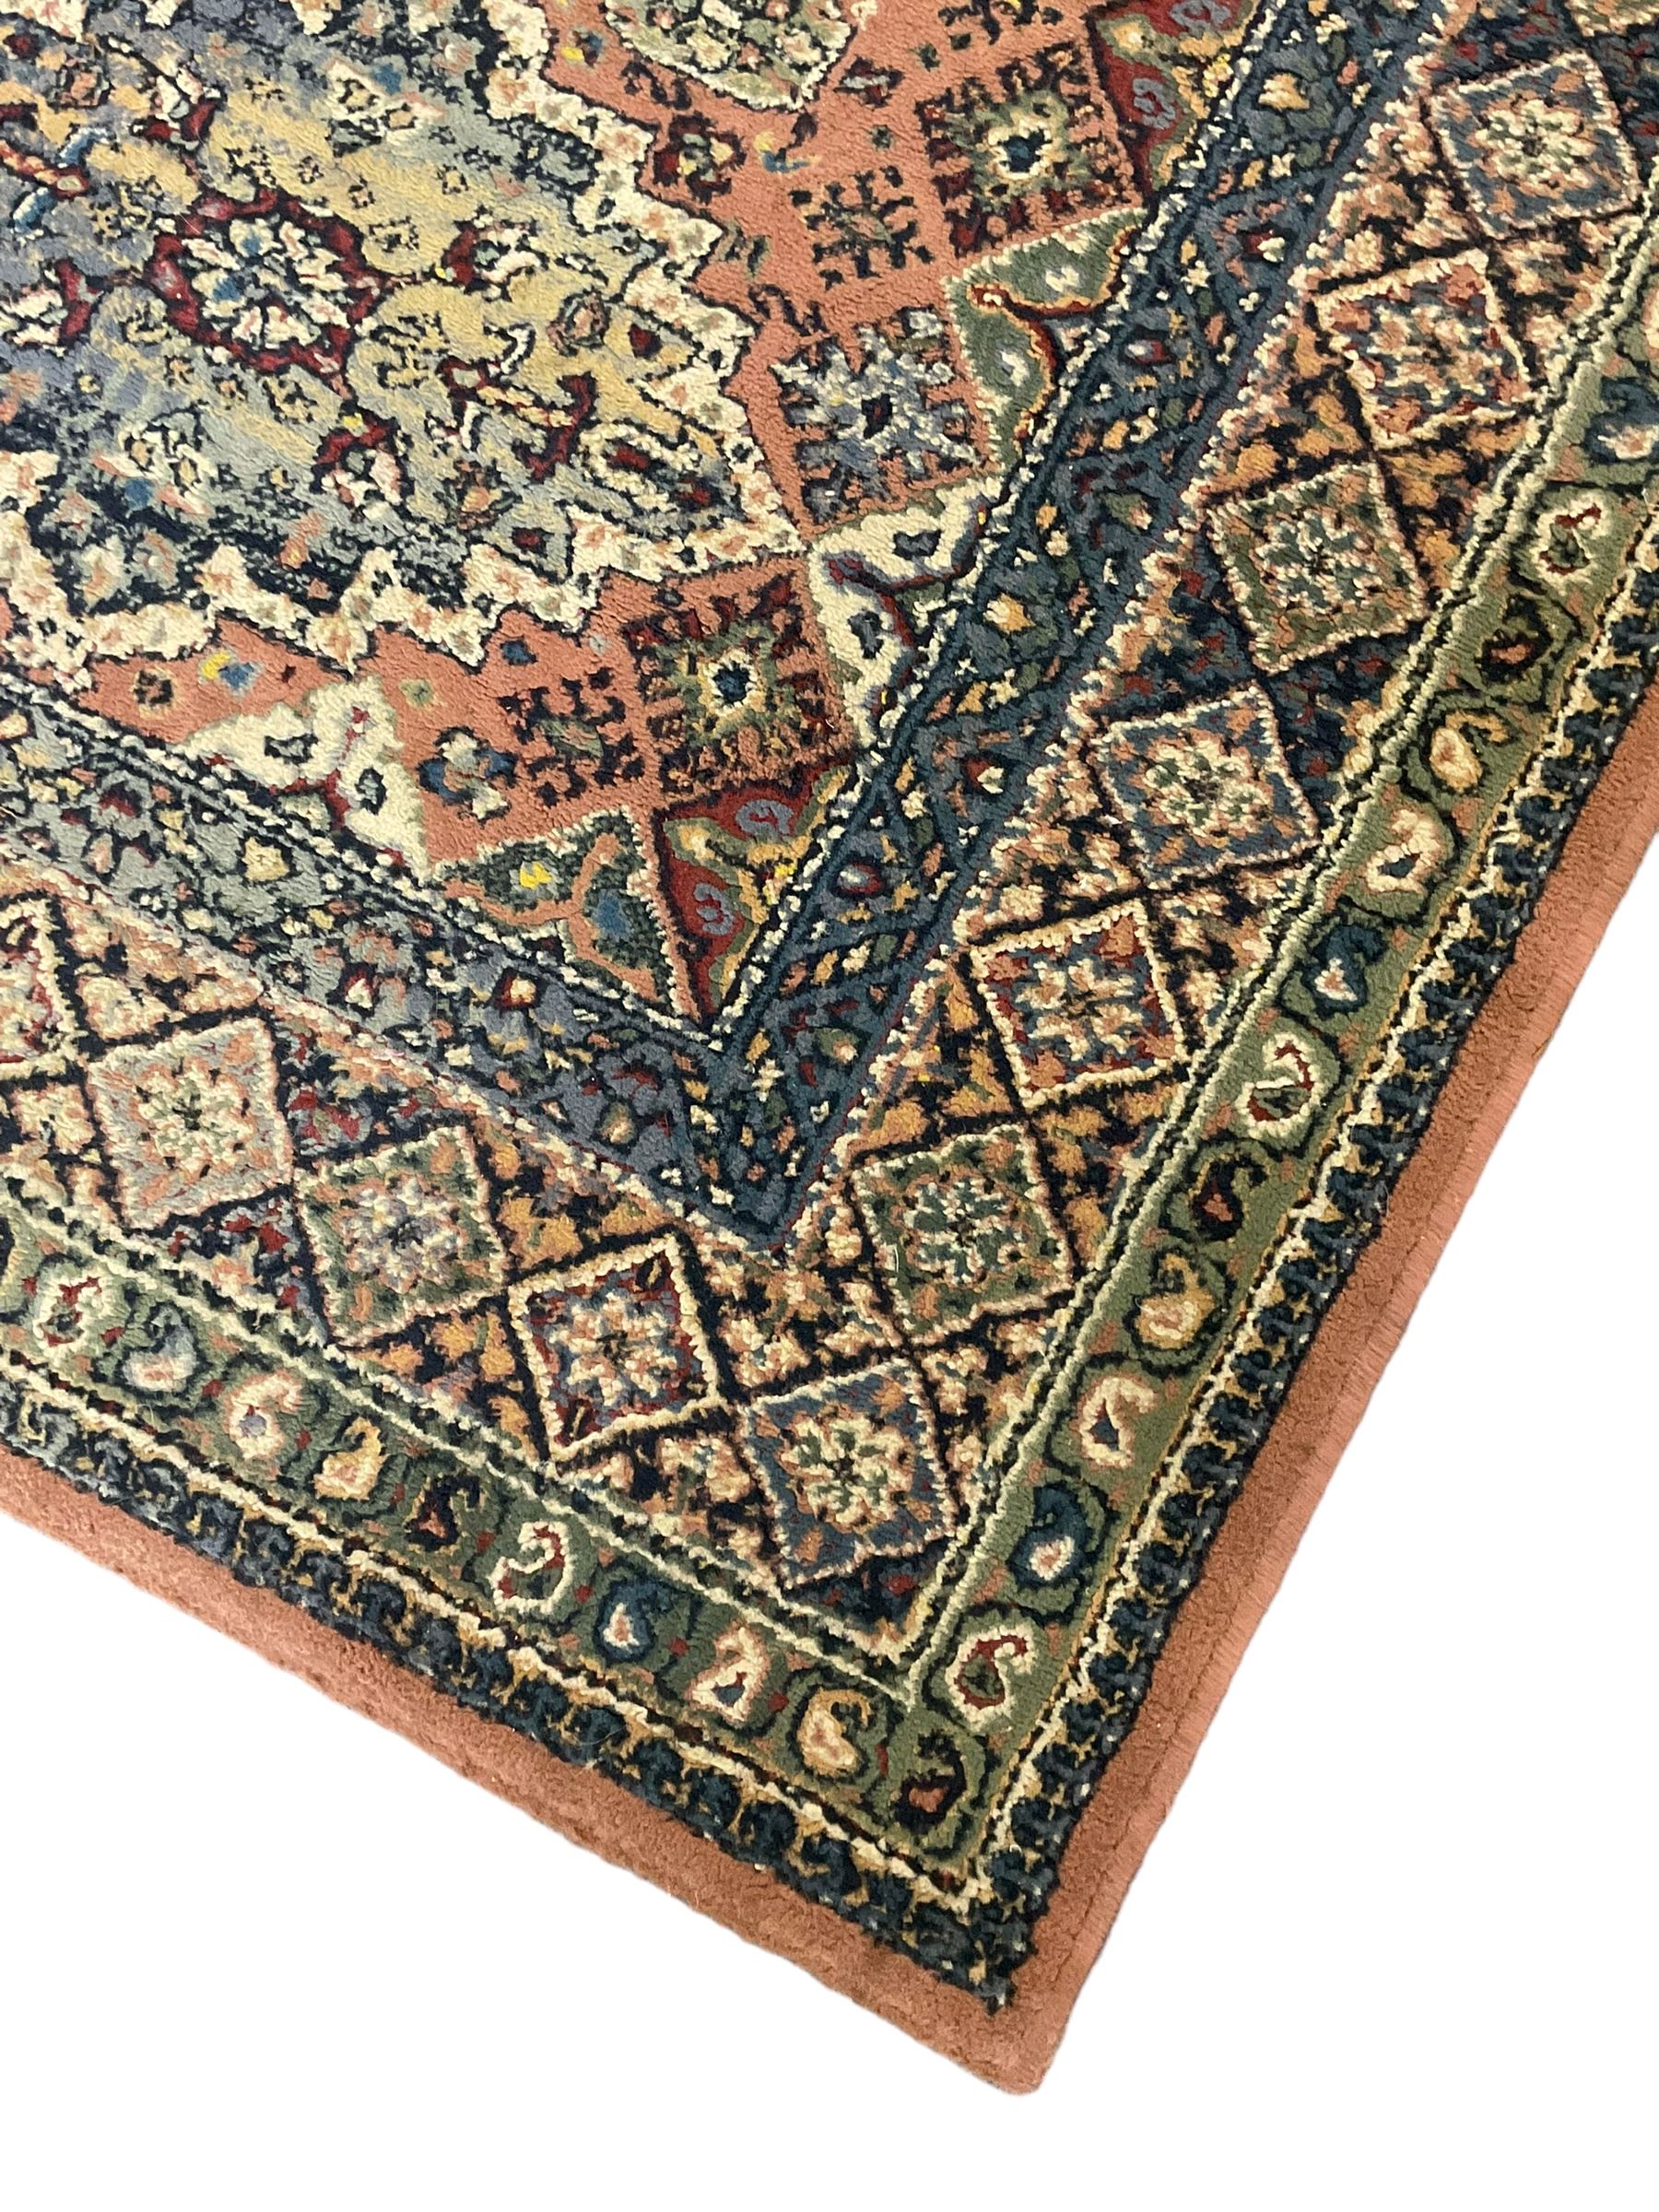 Persian design peach ground rug (169cm x 117cm); Chinese peach ground rug (187cm x 101cm) - Image 4 of 9